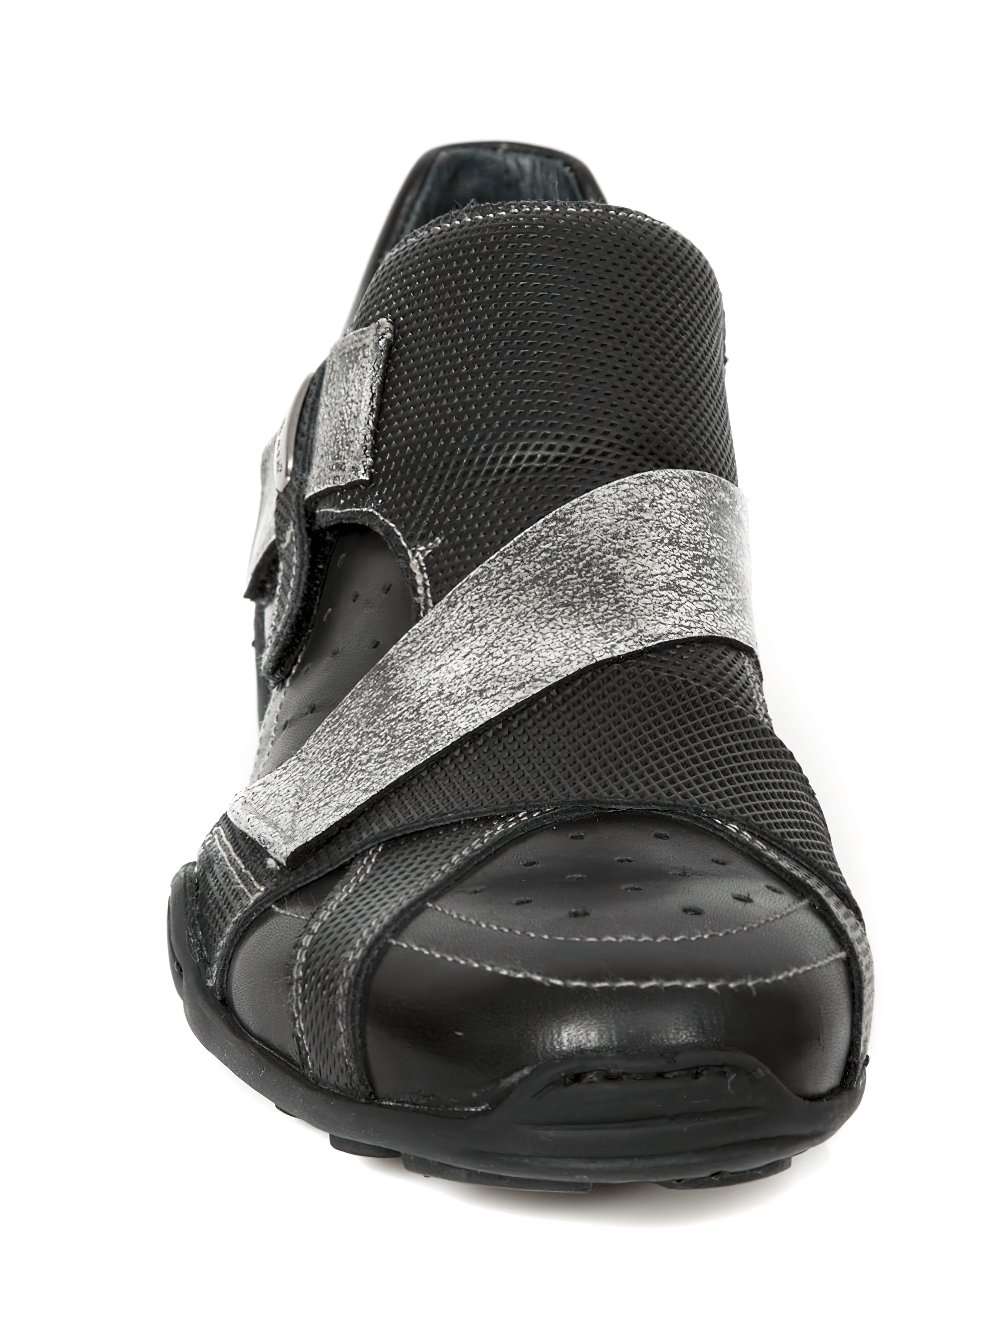 NEW ROCK Herren-Rock-Schuhe in Schwarz mit silbernem Klettverschluss